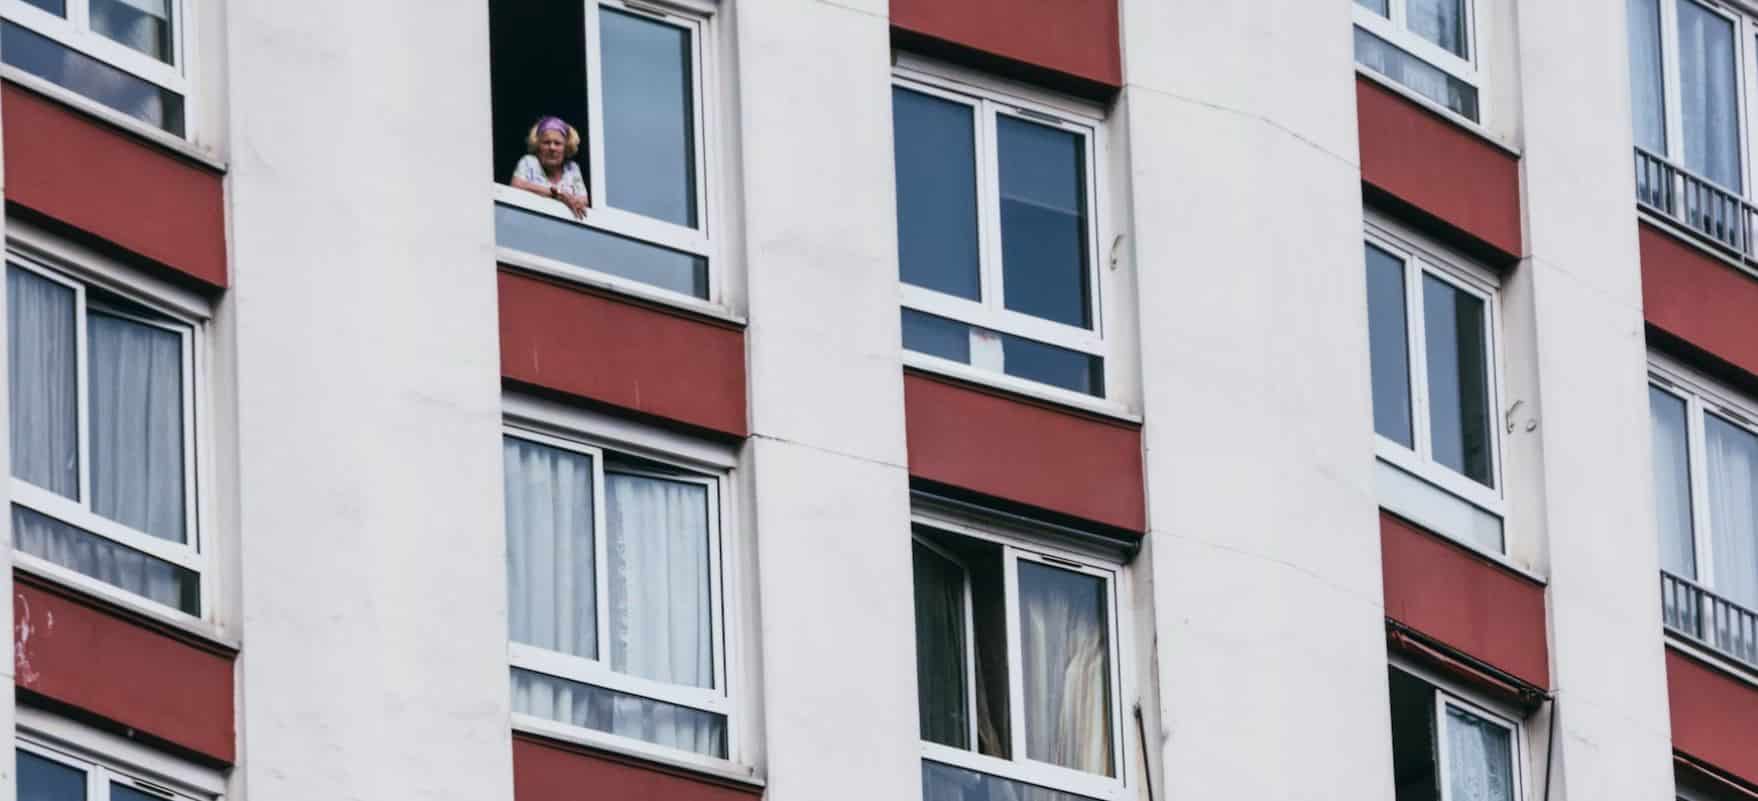 Una mujer asomada al balcón en un gran bloque de pisos.